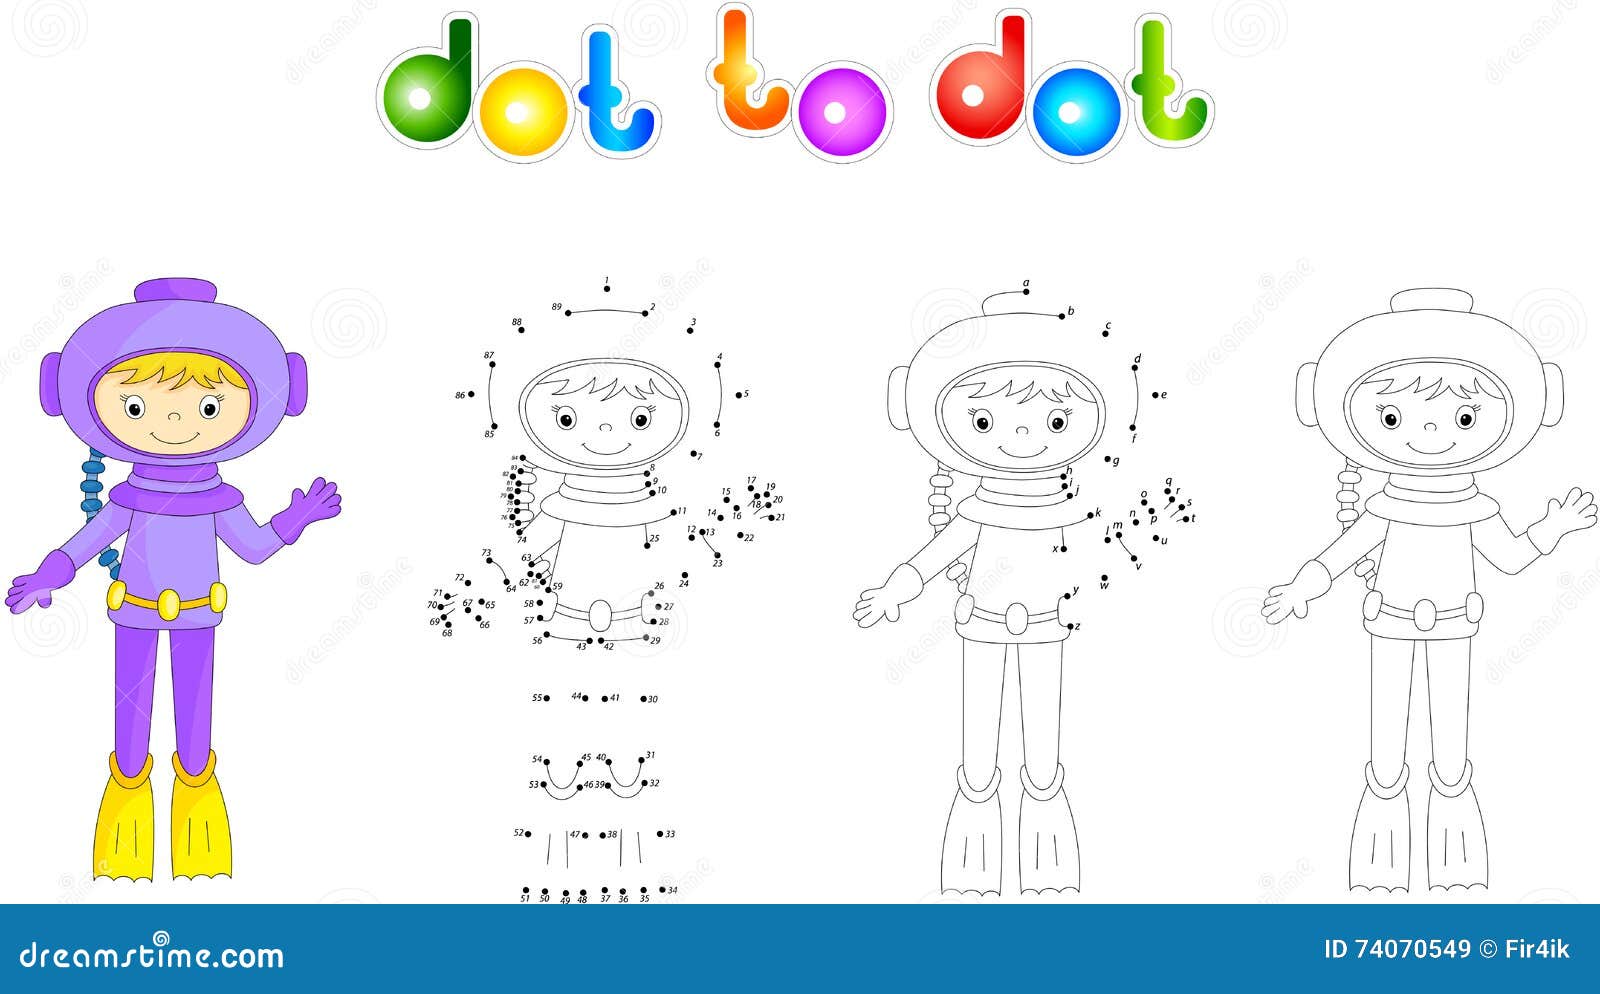 Colorir por jogo de números. ilustração em vetor de jogo de colorir com  pinguim de desenho animado para livro de colorir infantil